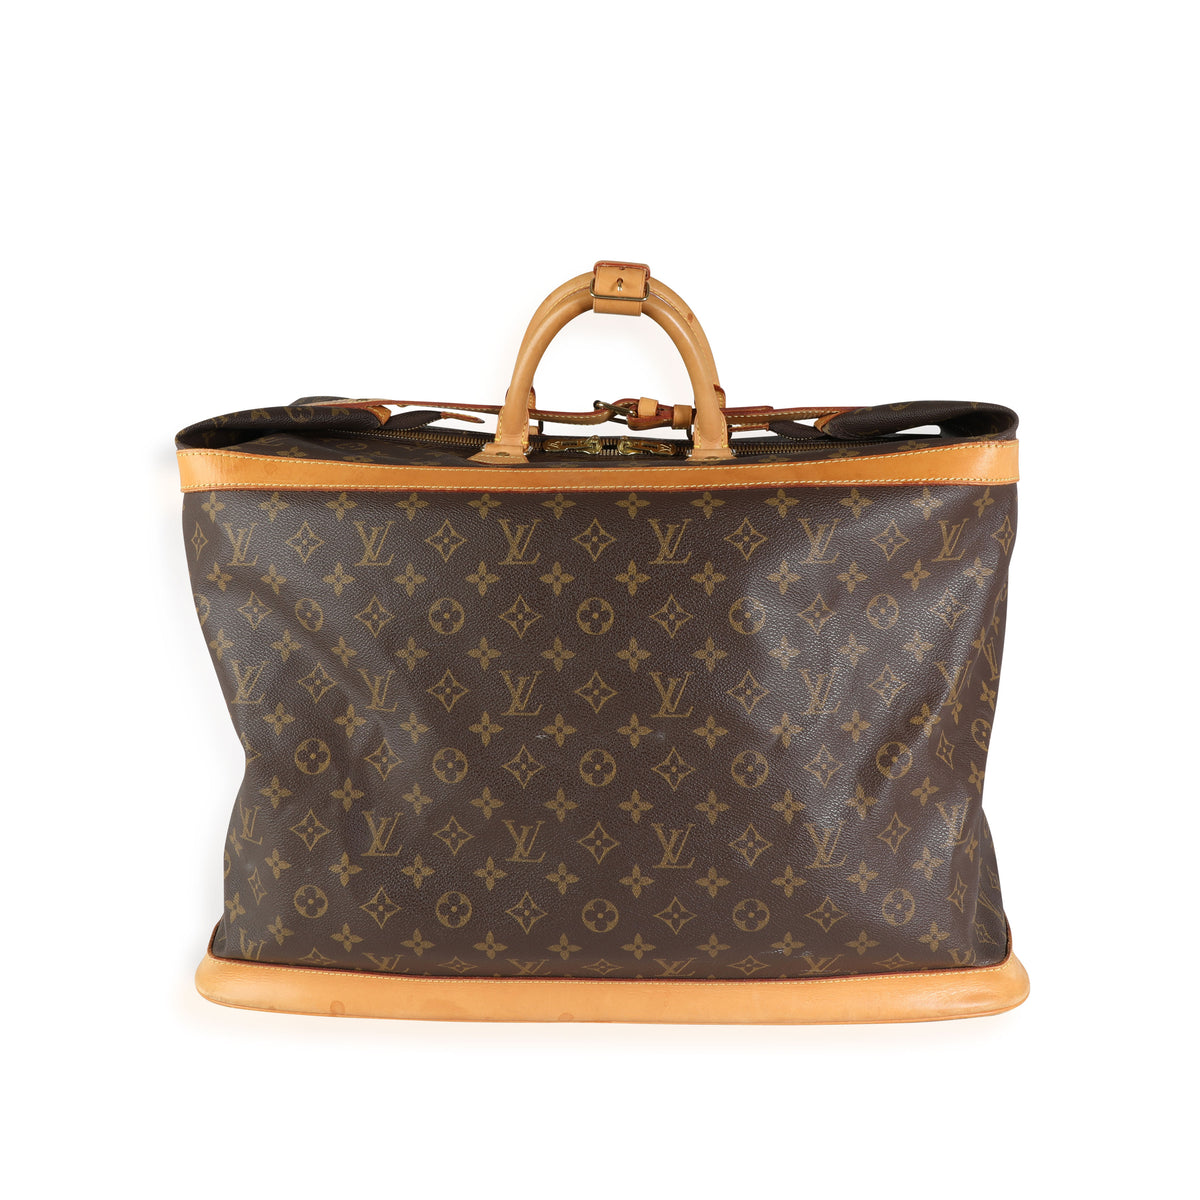 Authentic Louis Vuitton Monogram Cruiser 50 Trunk Travel Bag